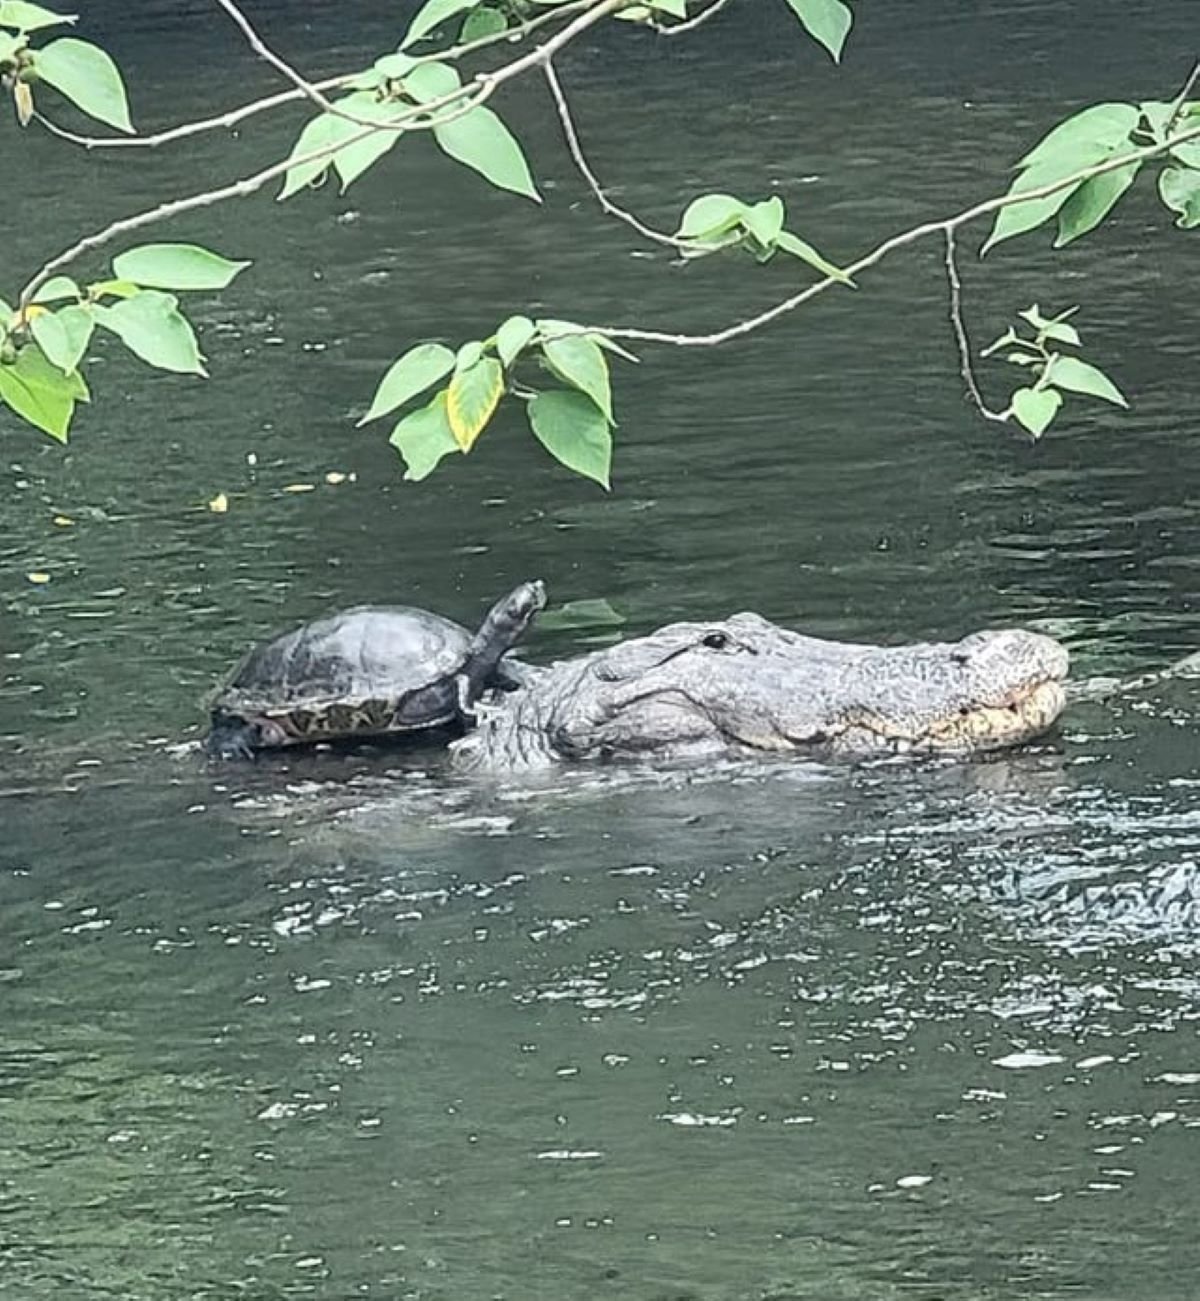 Turtle riding alligator